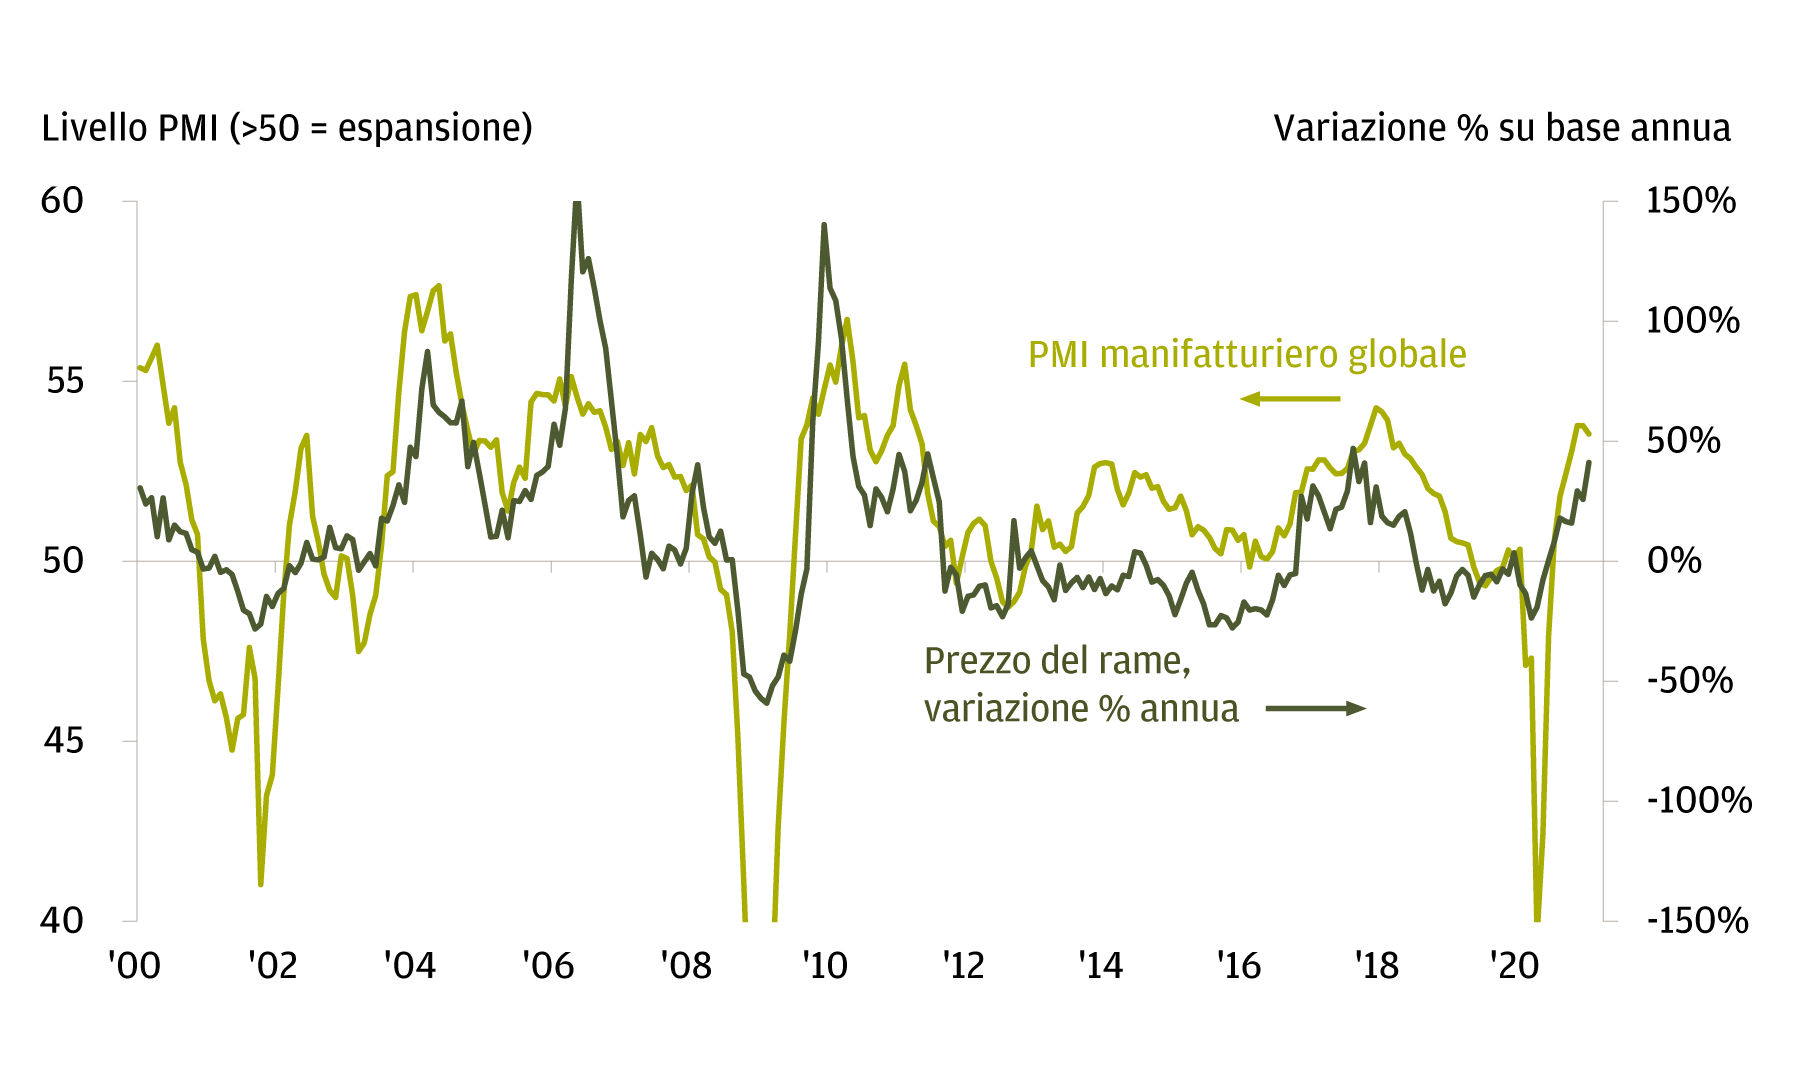 Questo grafico mostra il Global Manufacturing Index e la variazione % annua dei prezzi delle materie prime da gennaio 2000 a gennaio 2021. Dimostra che la variazione dei prezzi del rame tende a replicare fedelmente il ciclo manifatturiero e, per estensione, la crescita economica.